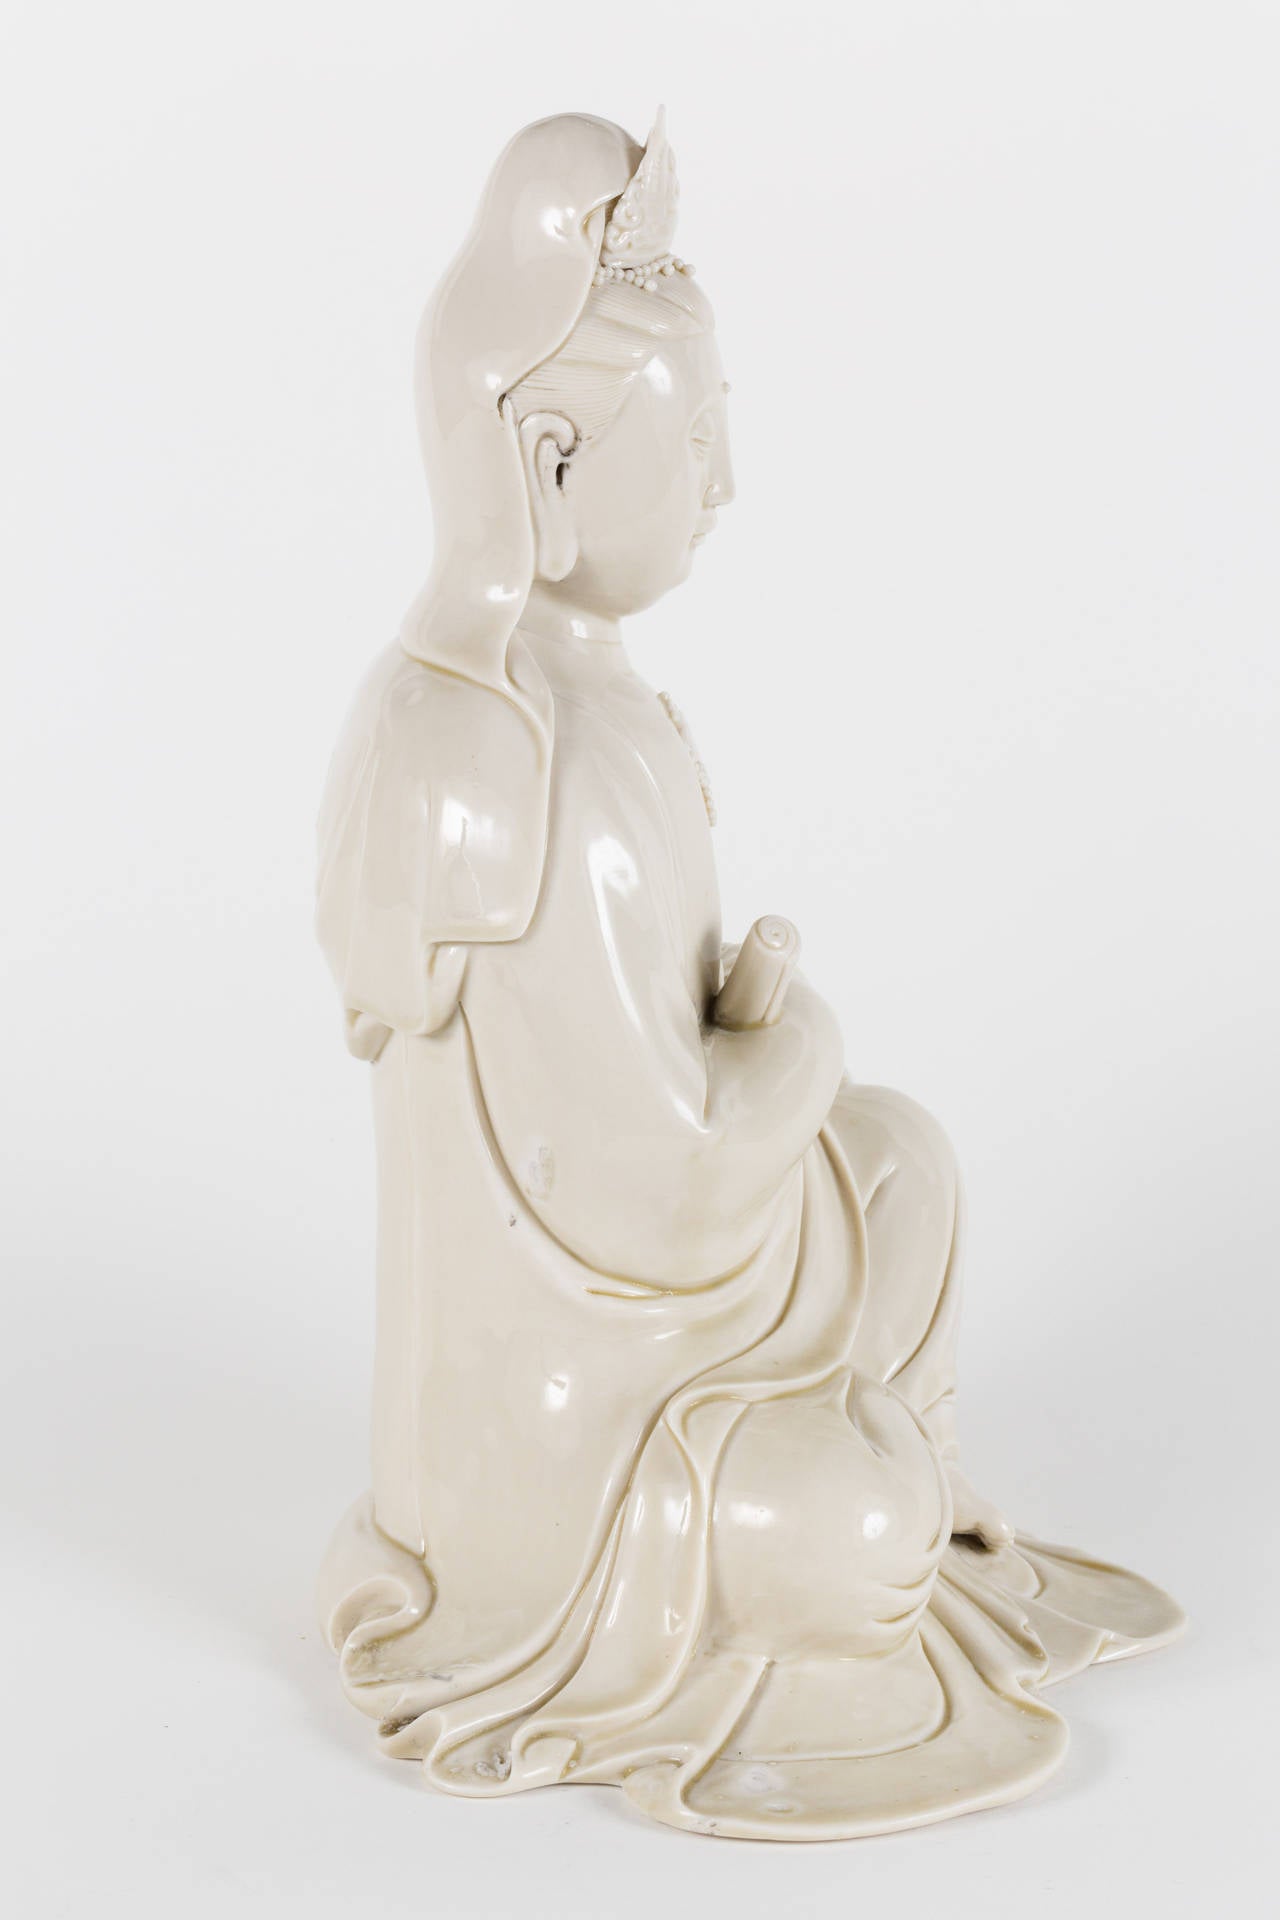 Glazed Chinese Blanc de Chine Kwan Yin Statue